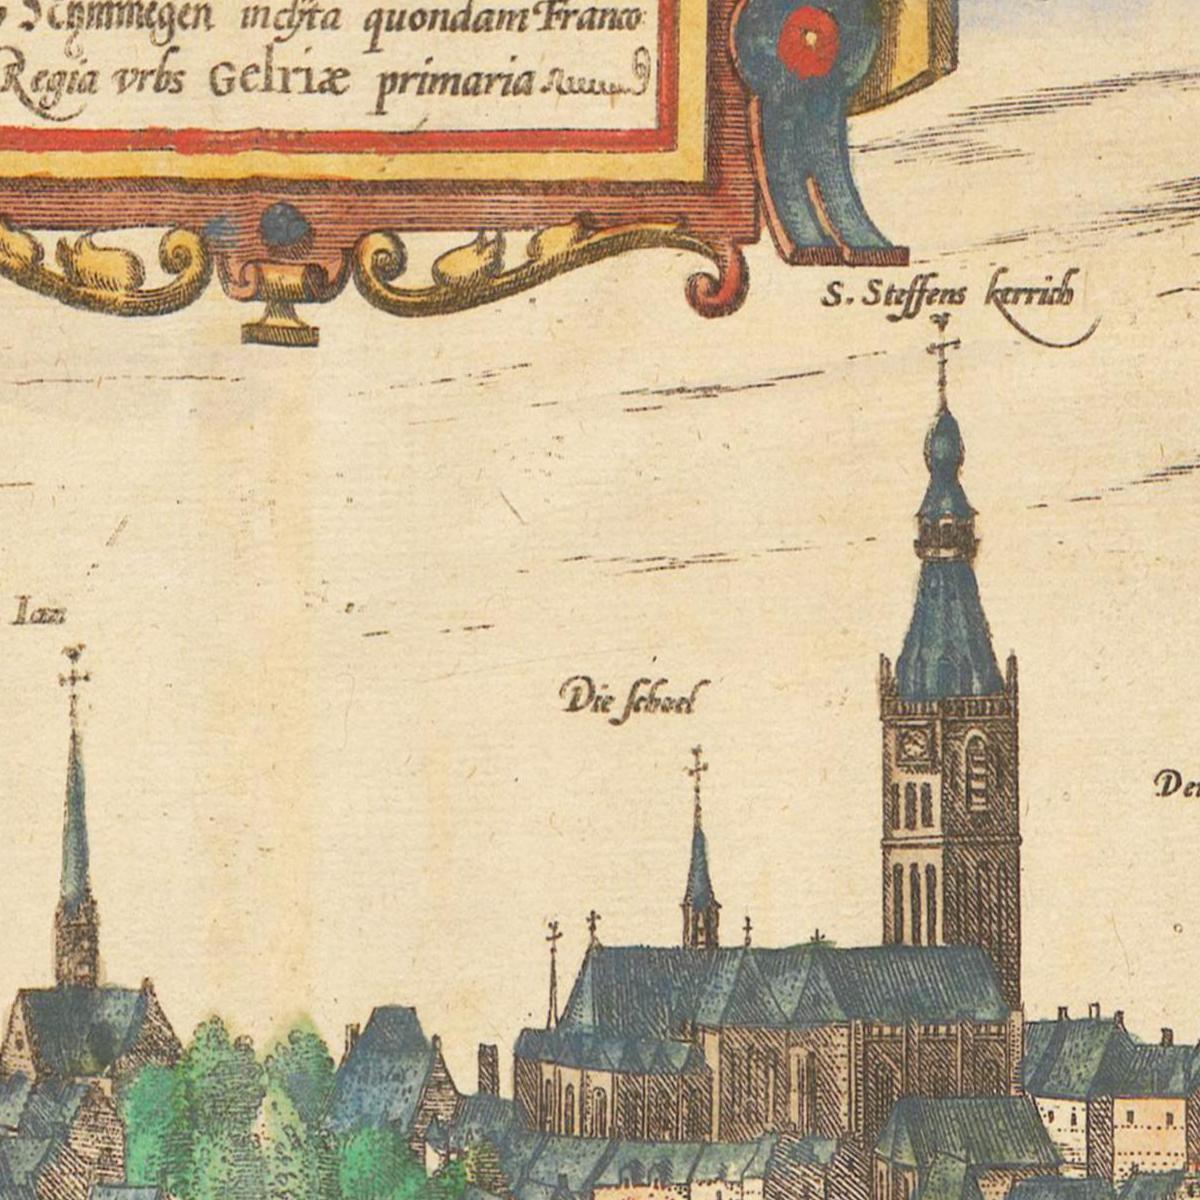 Historische Stadtansicht Nijmegen um 1609